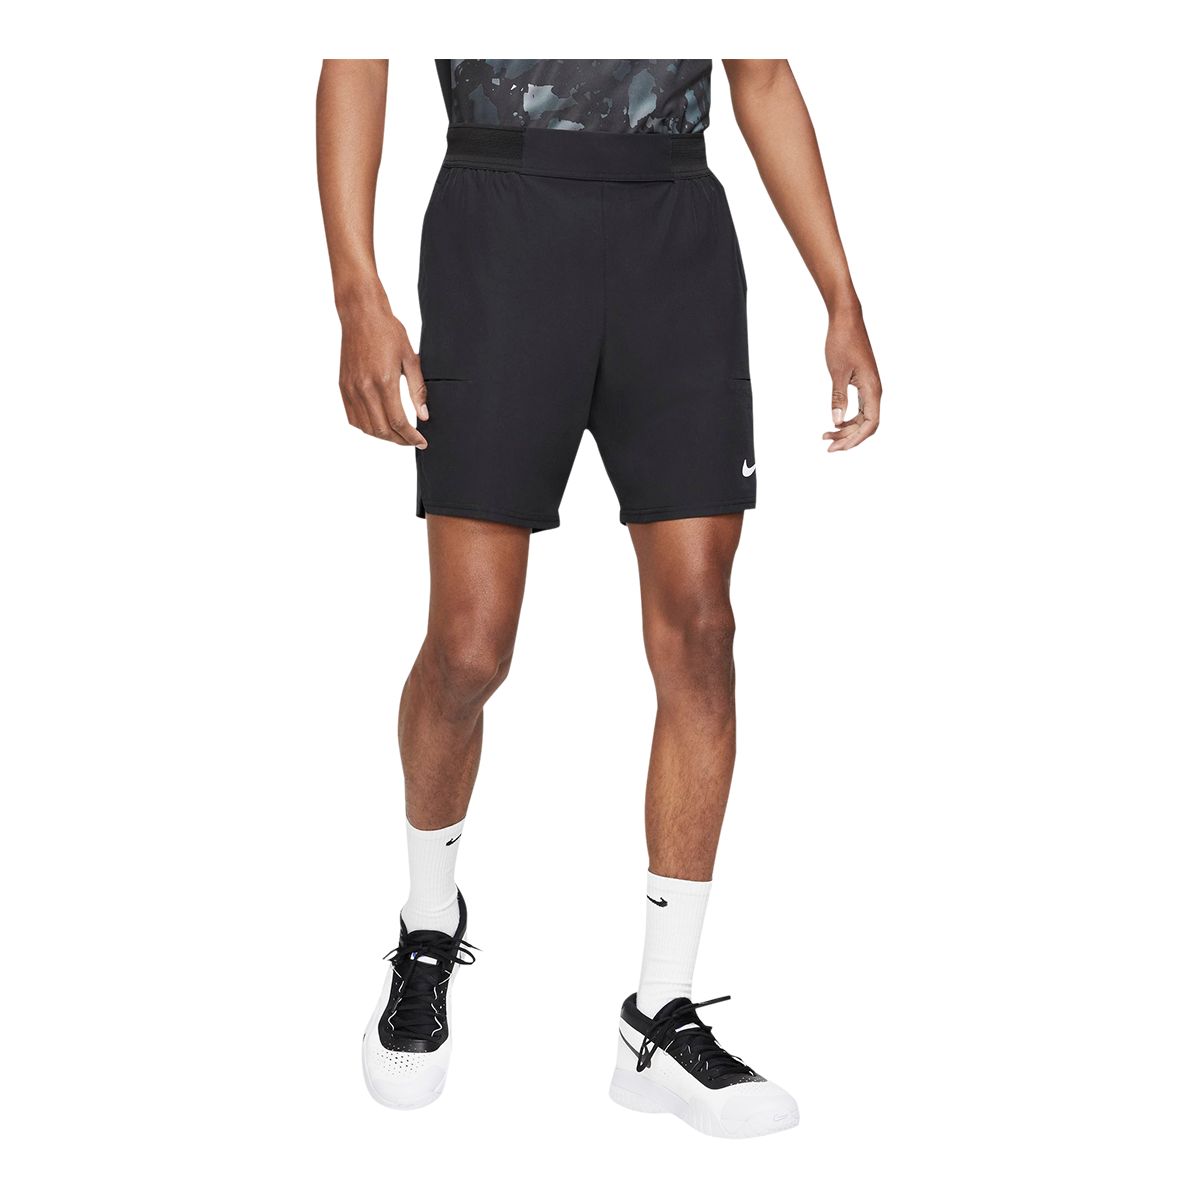 Nike Unisex Everyday Plus Cushioned Athletic Crew Socks